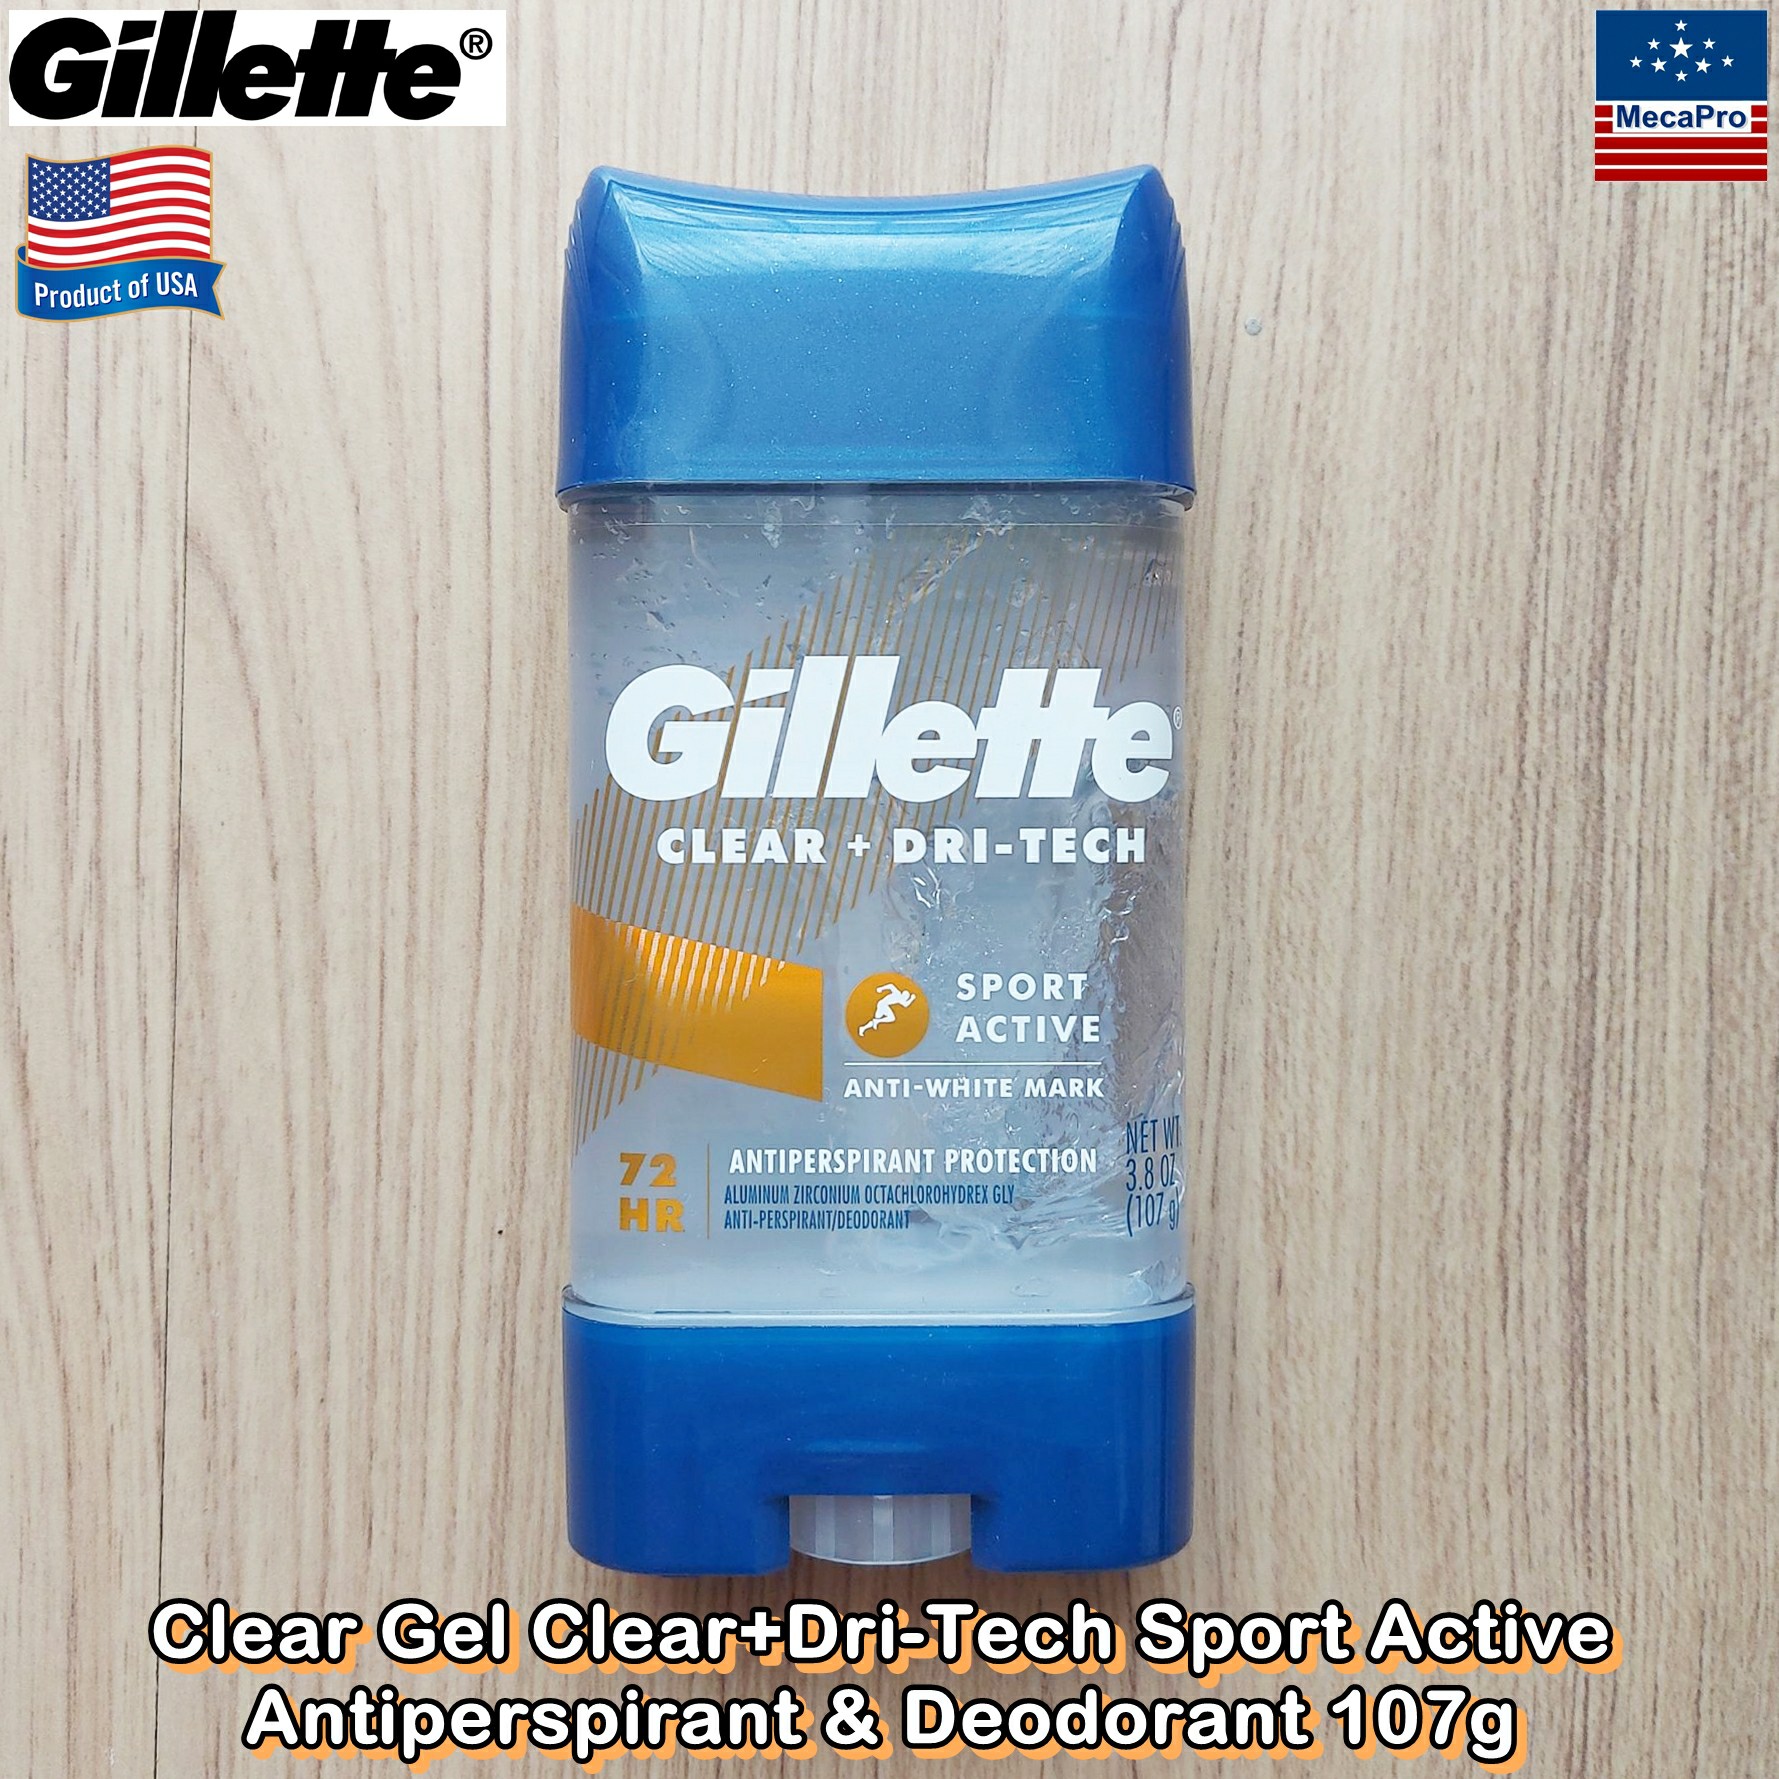 ราคา Gillette® Clear Gel Clear+Dri-Tech Antiperspirant & Deodorant 107g ยิลเลตต์ เจลใส ระงับเหงื่อ-กลิ่นกาย สำหรับผู้ชาย